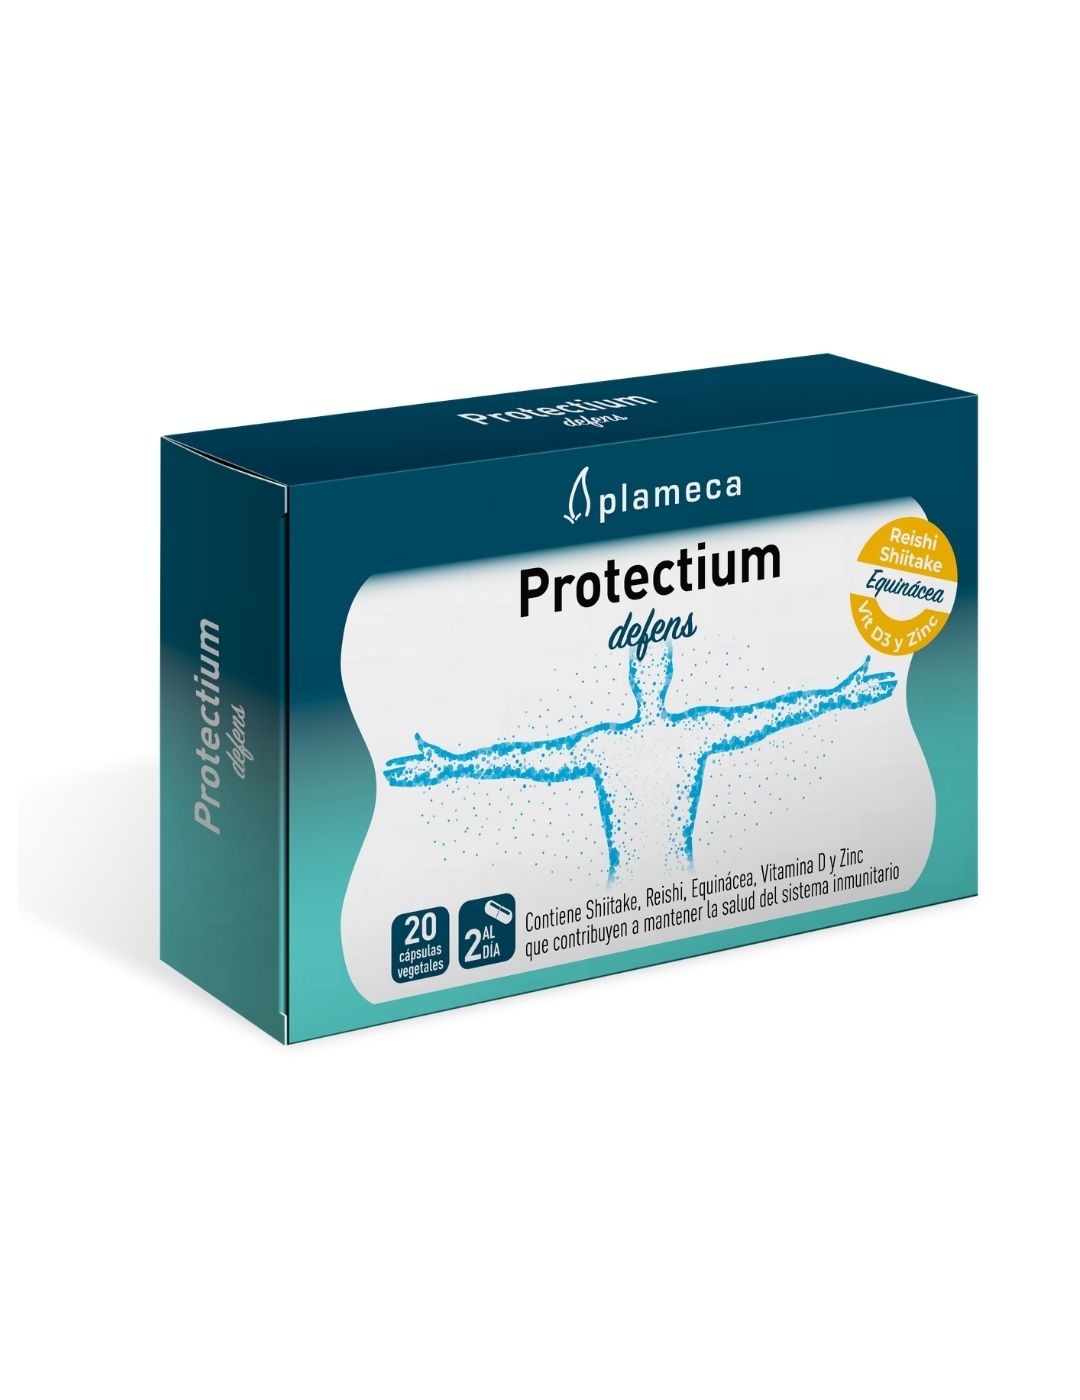 Protectium defens